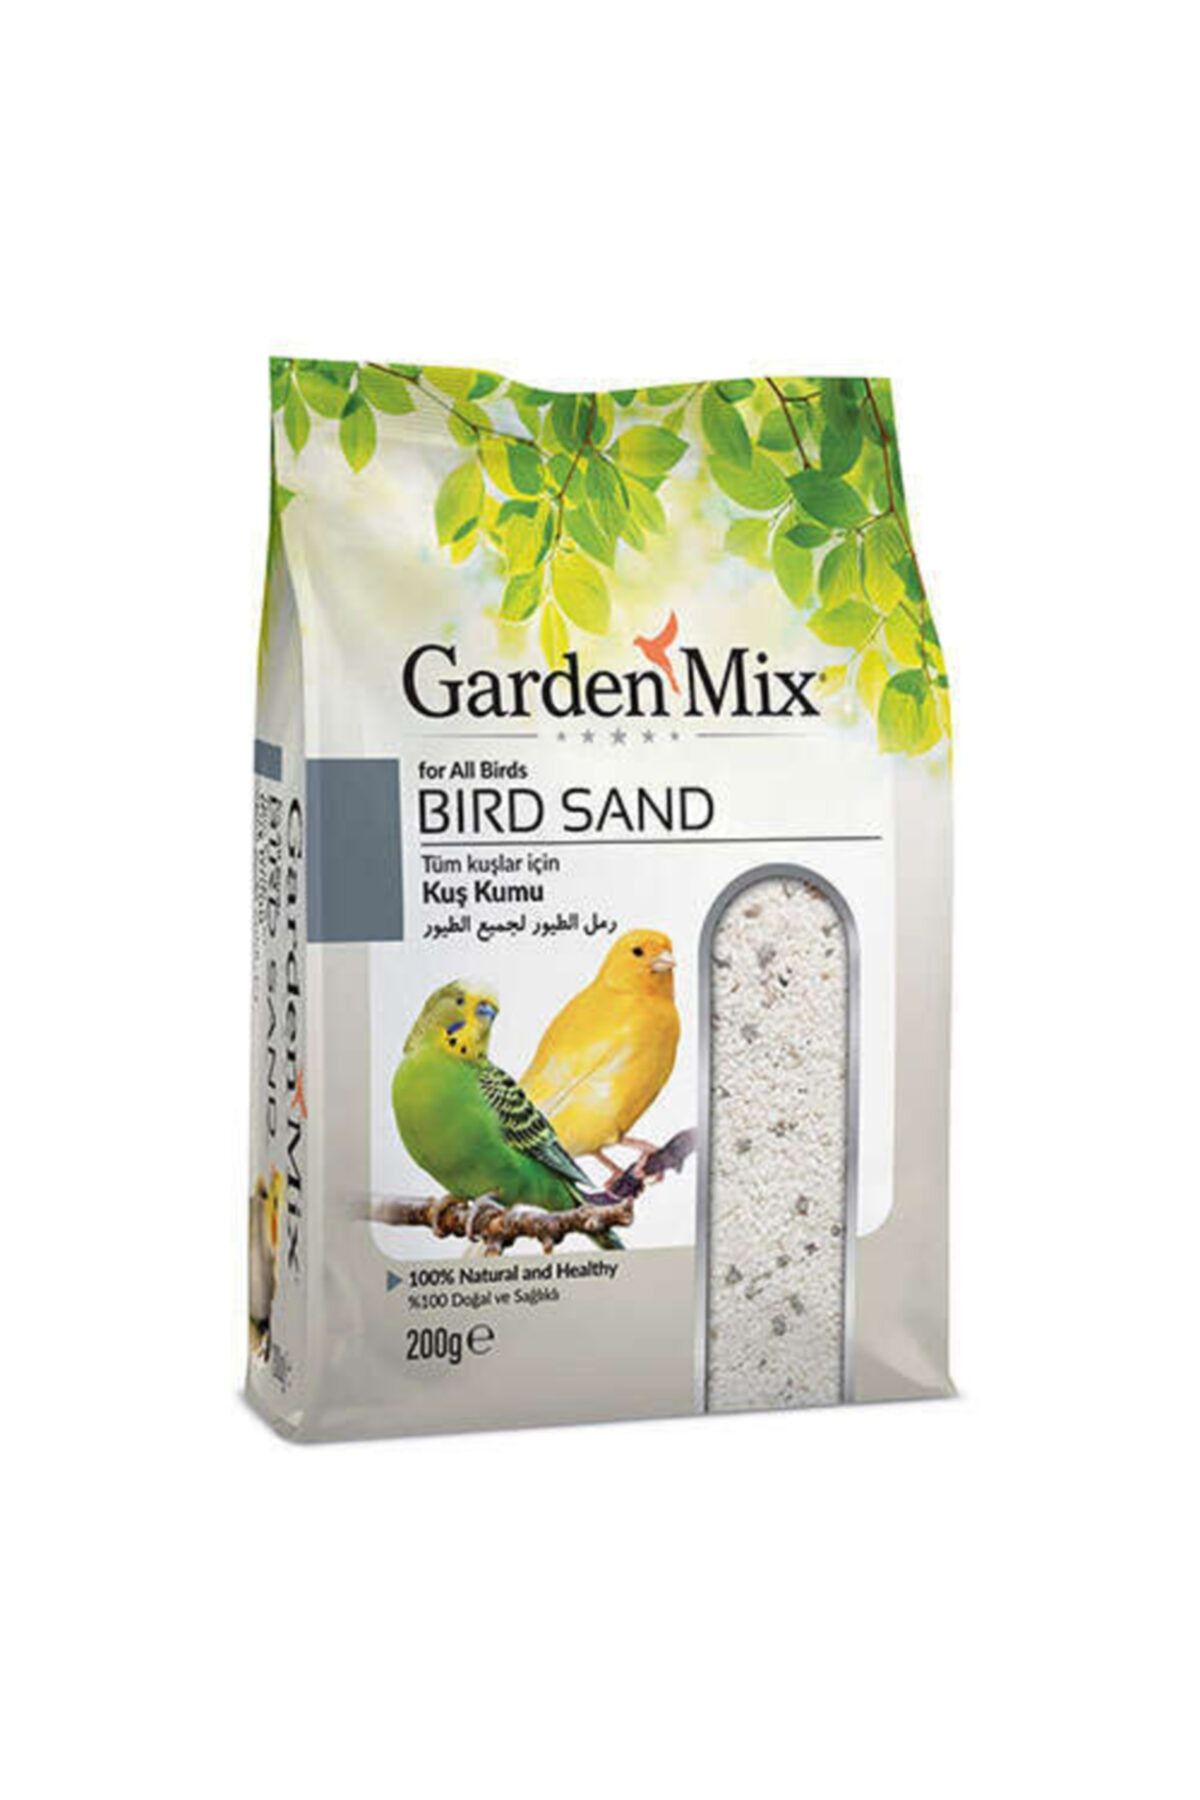 Gardenmix Garden Mix Tüm Kuşlar için Doğal ve Sağlıklı Kuş Kumu 200 Gr